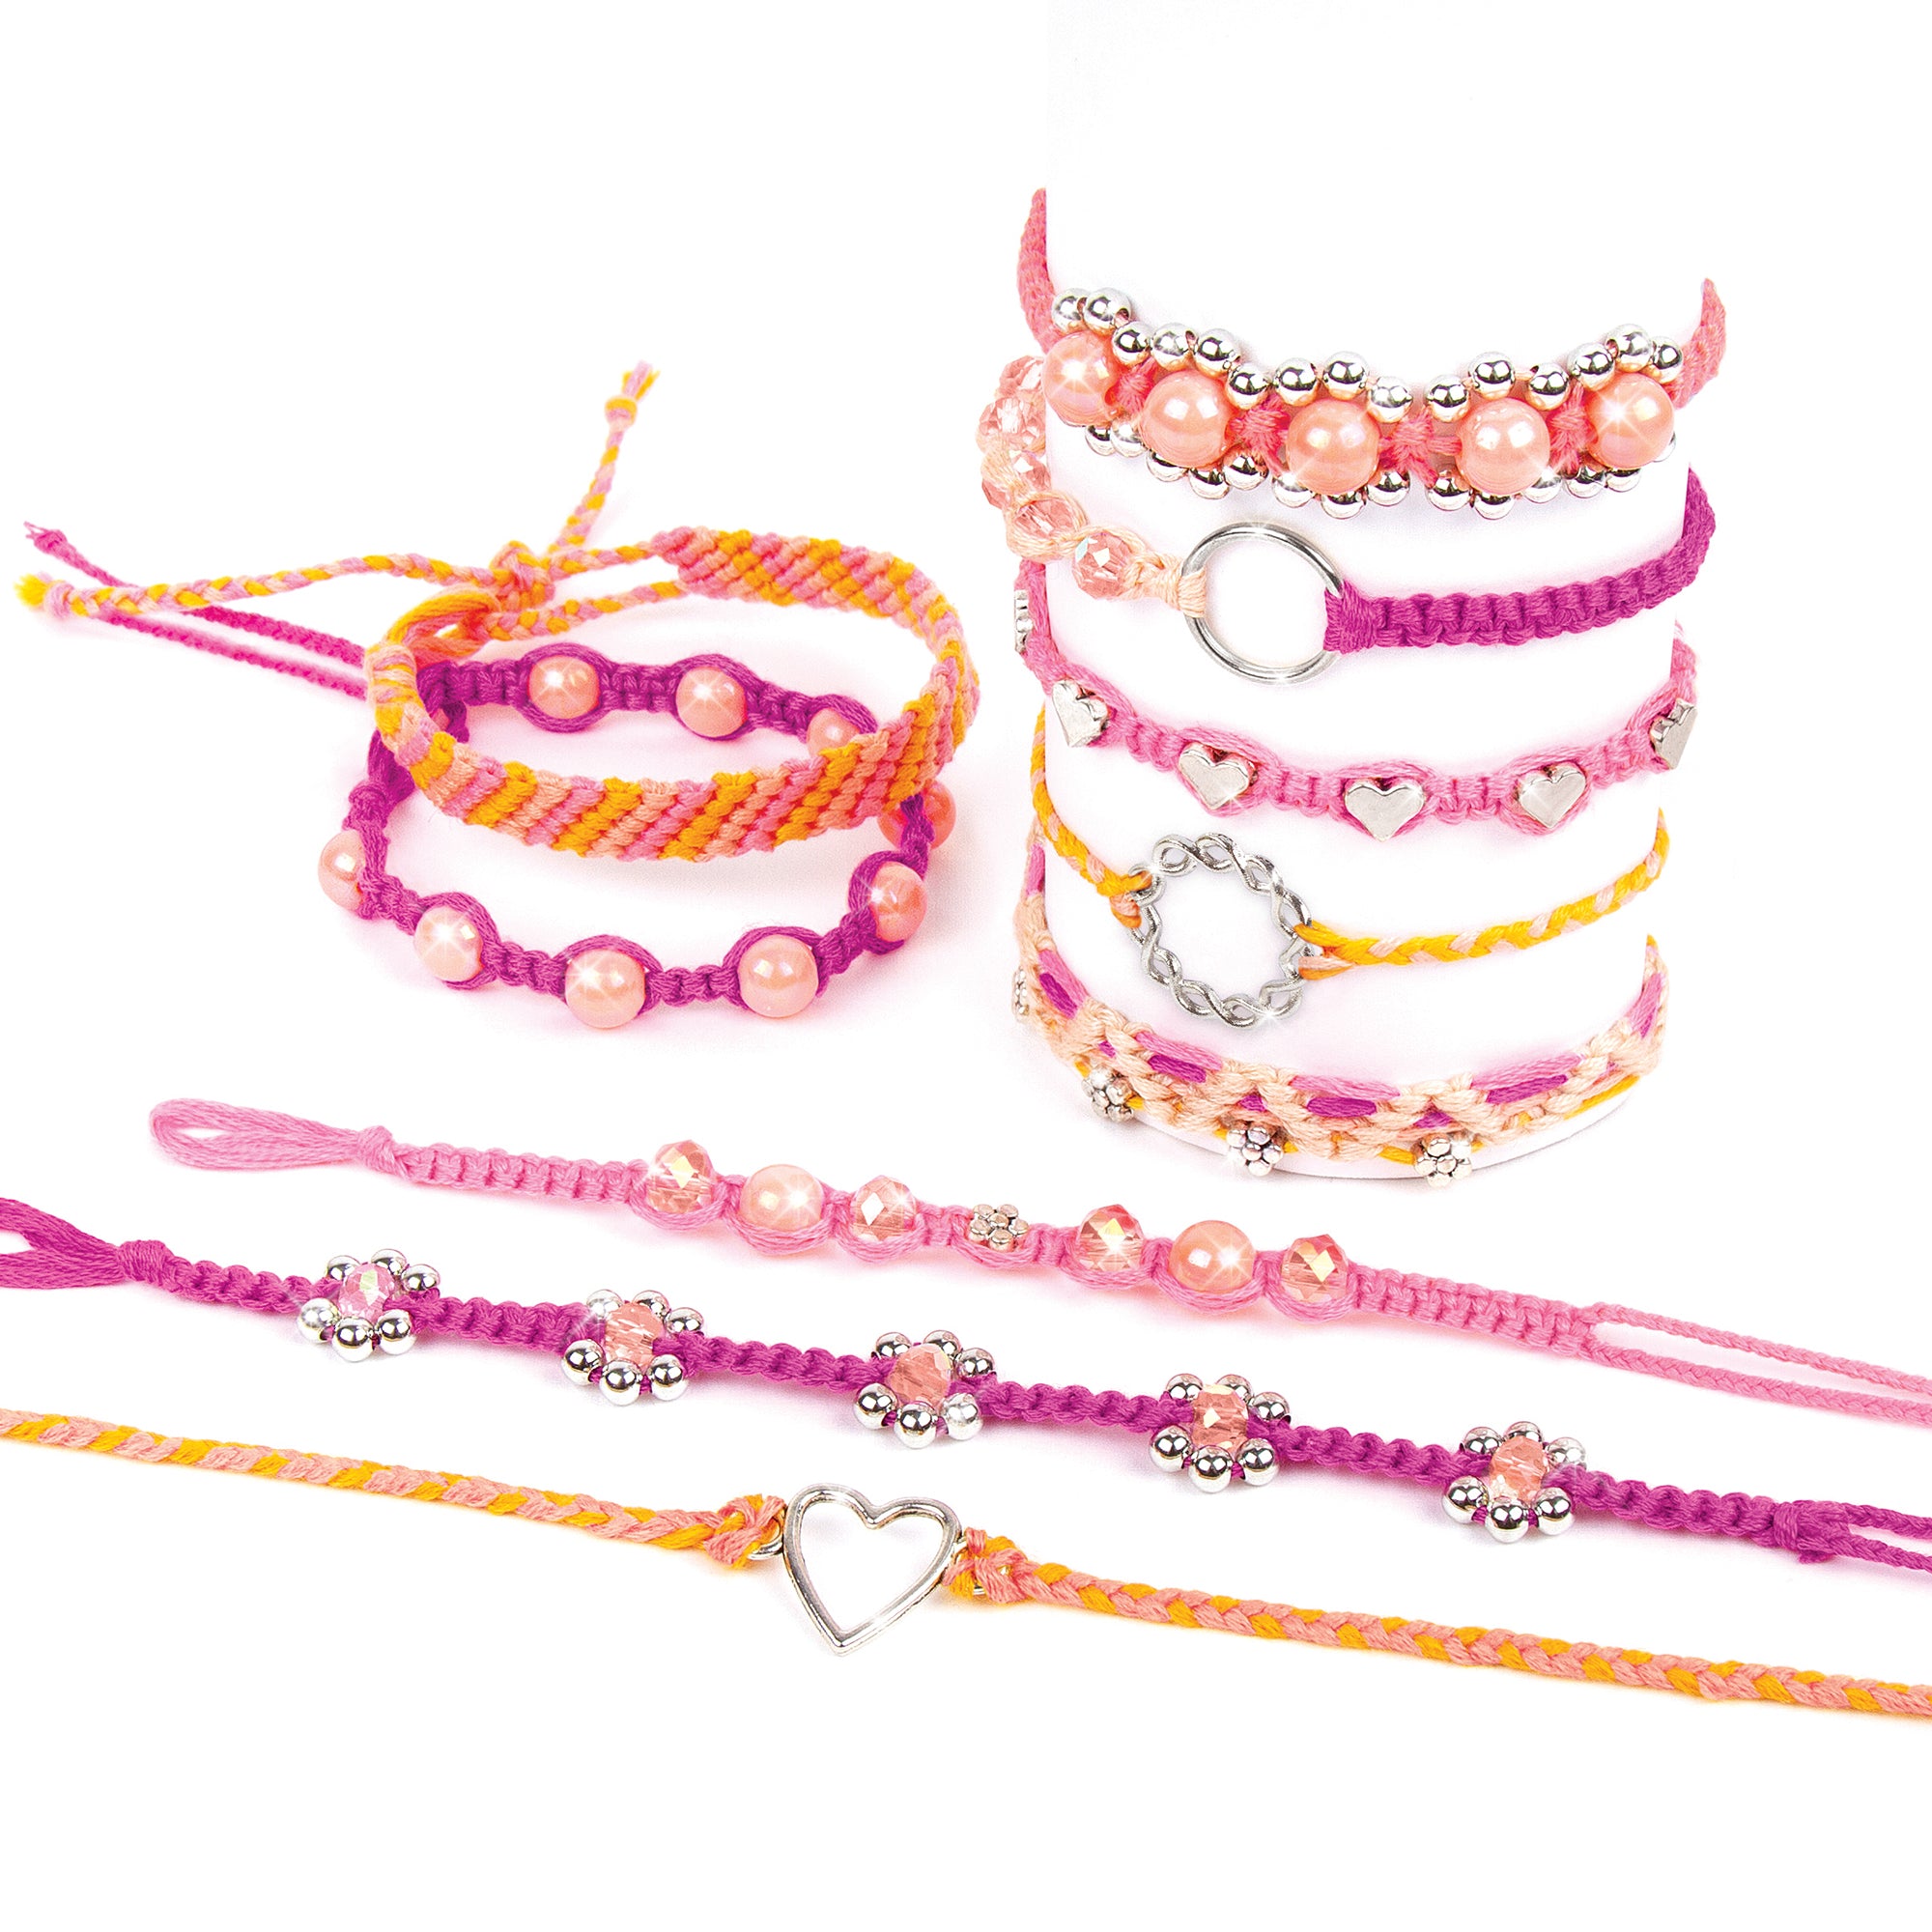 Woven Hippie Bracelets for Teen Girls, Adjustable Girl Braided String Friendship  Bracelet for Women, Boho Braid Rope Surfer Jewelry for Men,Style 4，G151542  - Walmart.com